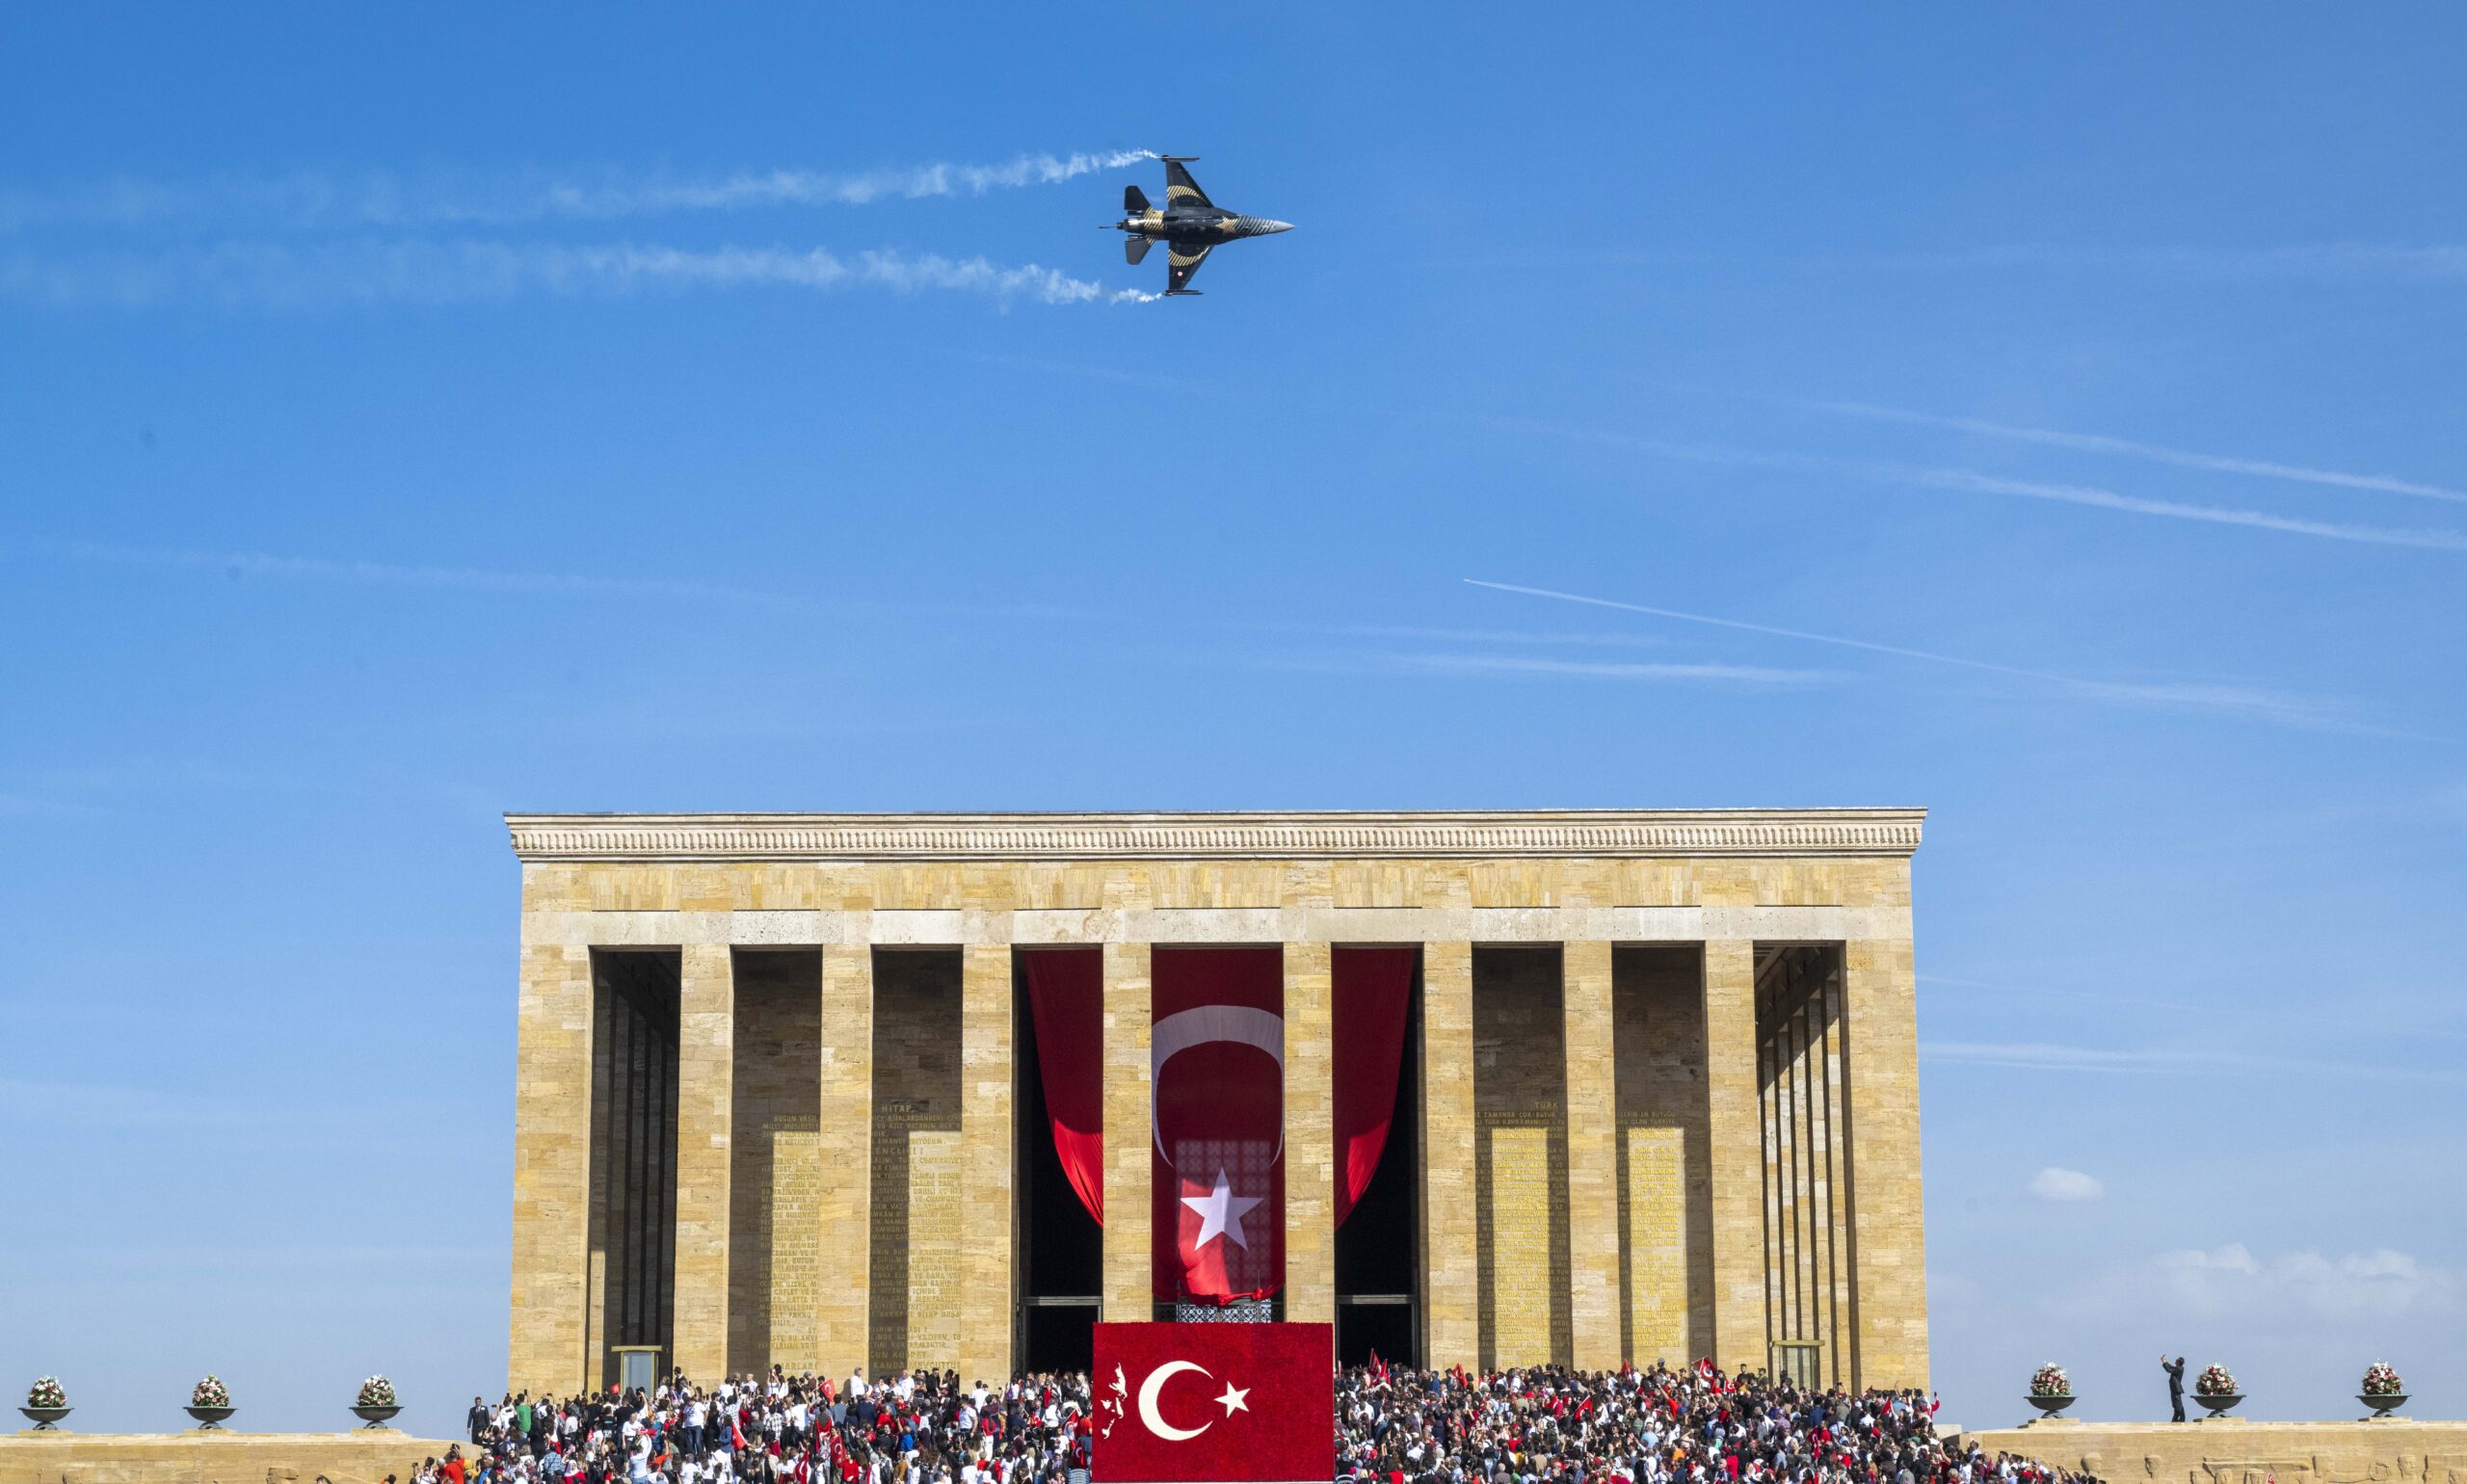 SOLOTÜRK’ten Anıtkabir üzerinde Cumhuriyet’in 100. yıl dönümüne özel uçuş gösterisi